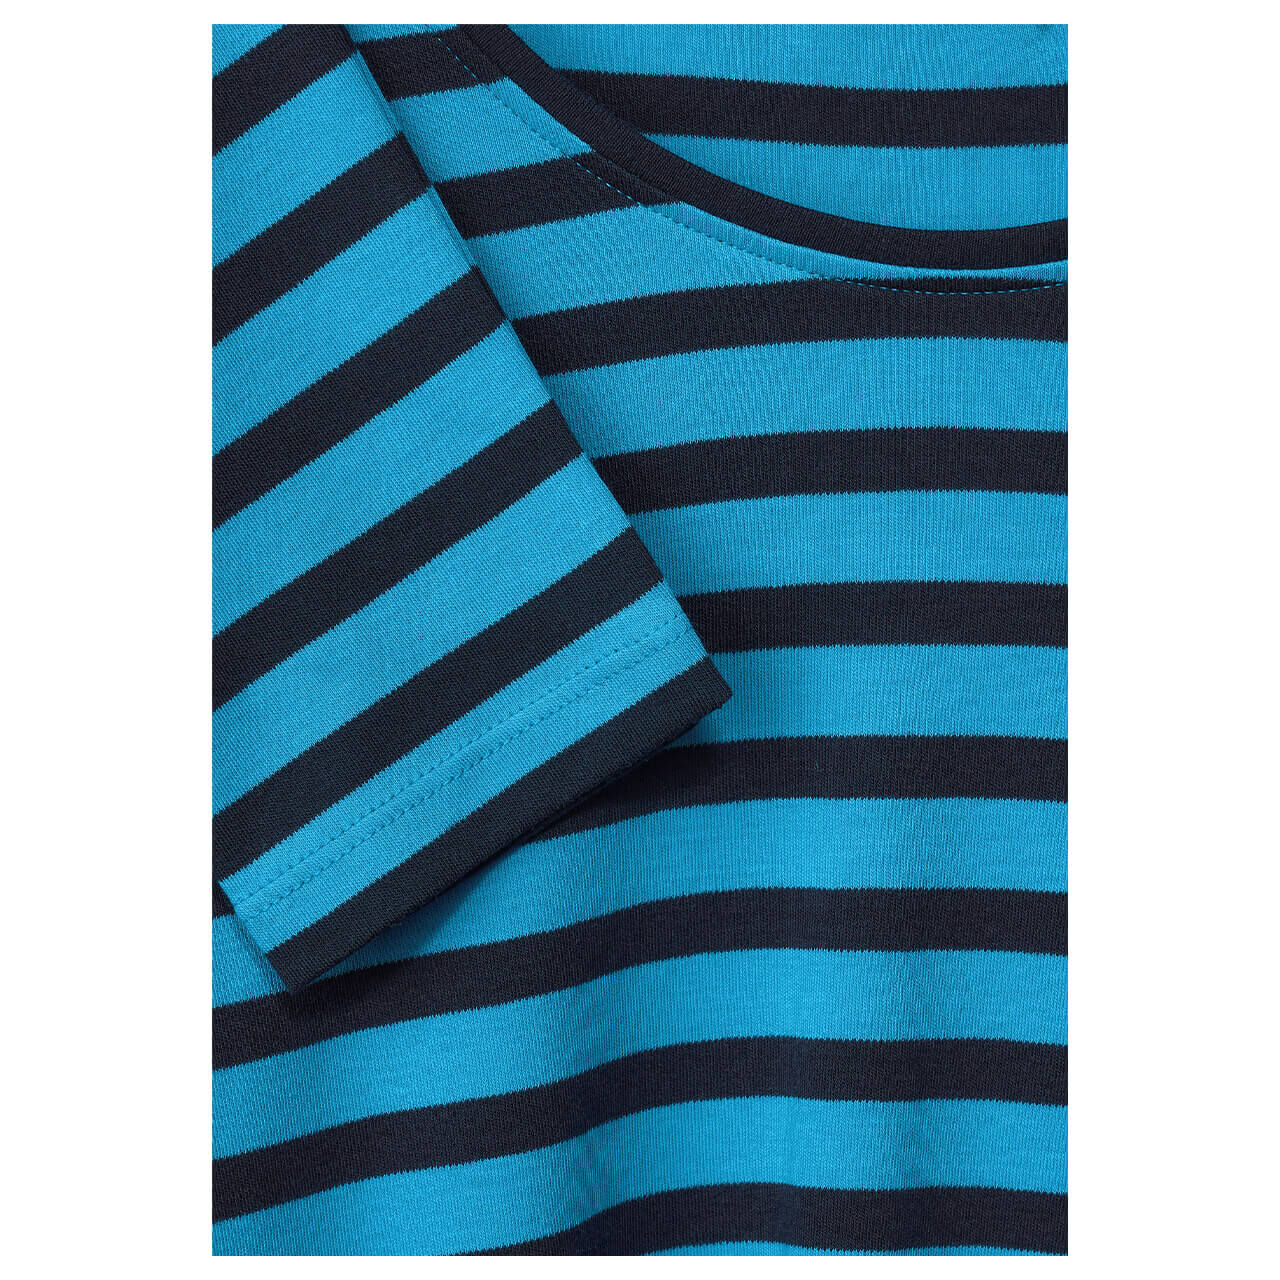 Cecil Pia Langarm Shirt club blue stripes